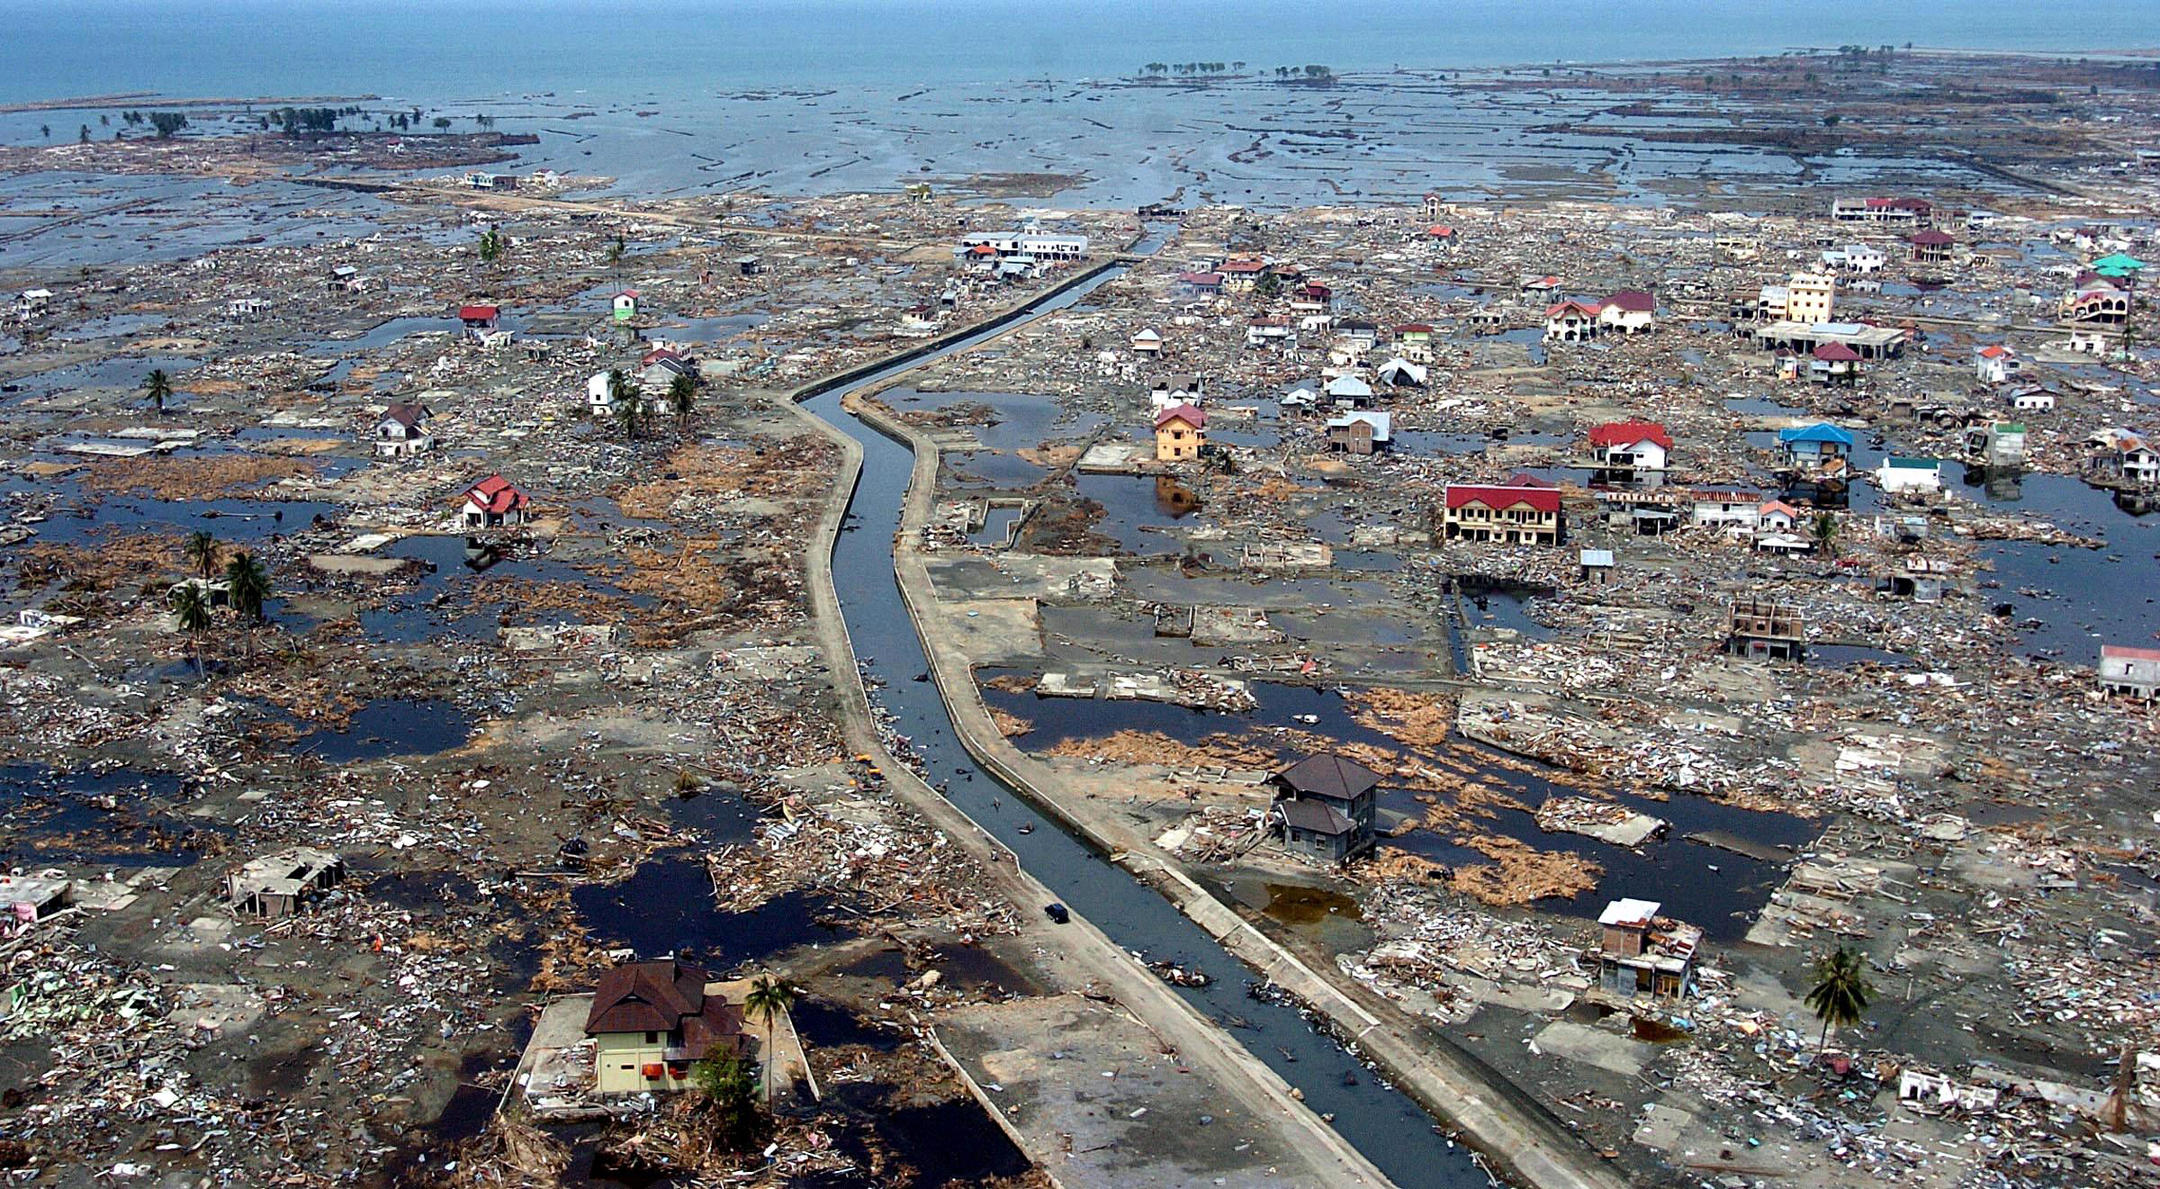 Vue aérienne de la zone côtière de Banda Aceh sur l'ïle de Sumatra (Indonésie) après le tsunami du 26 décembre 2004. 